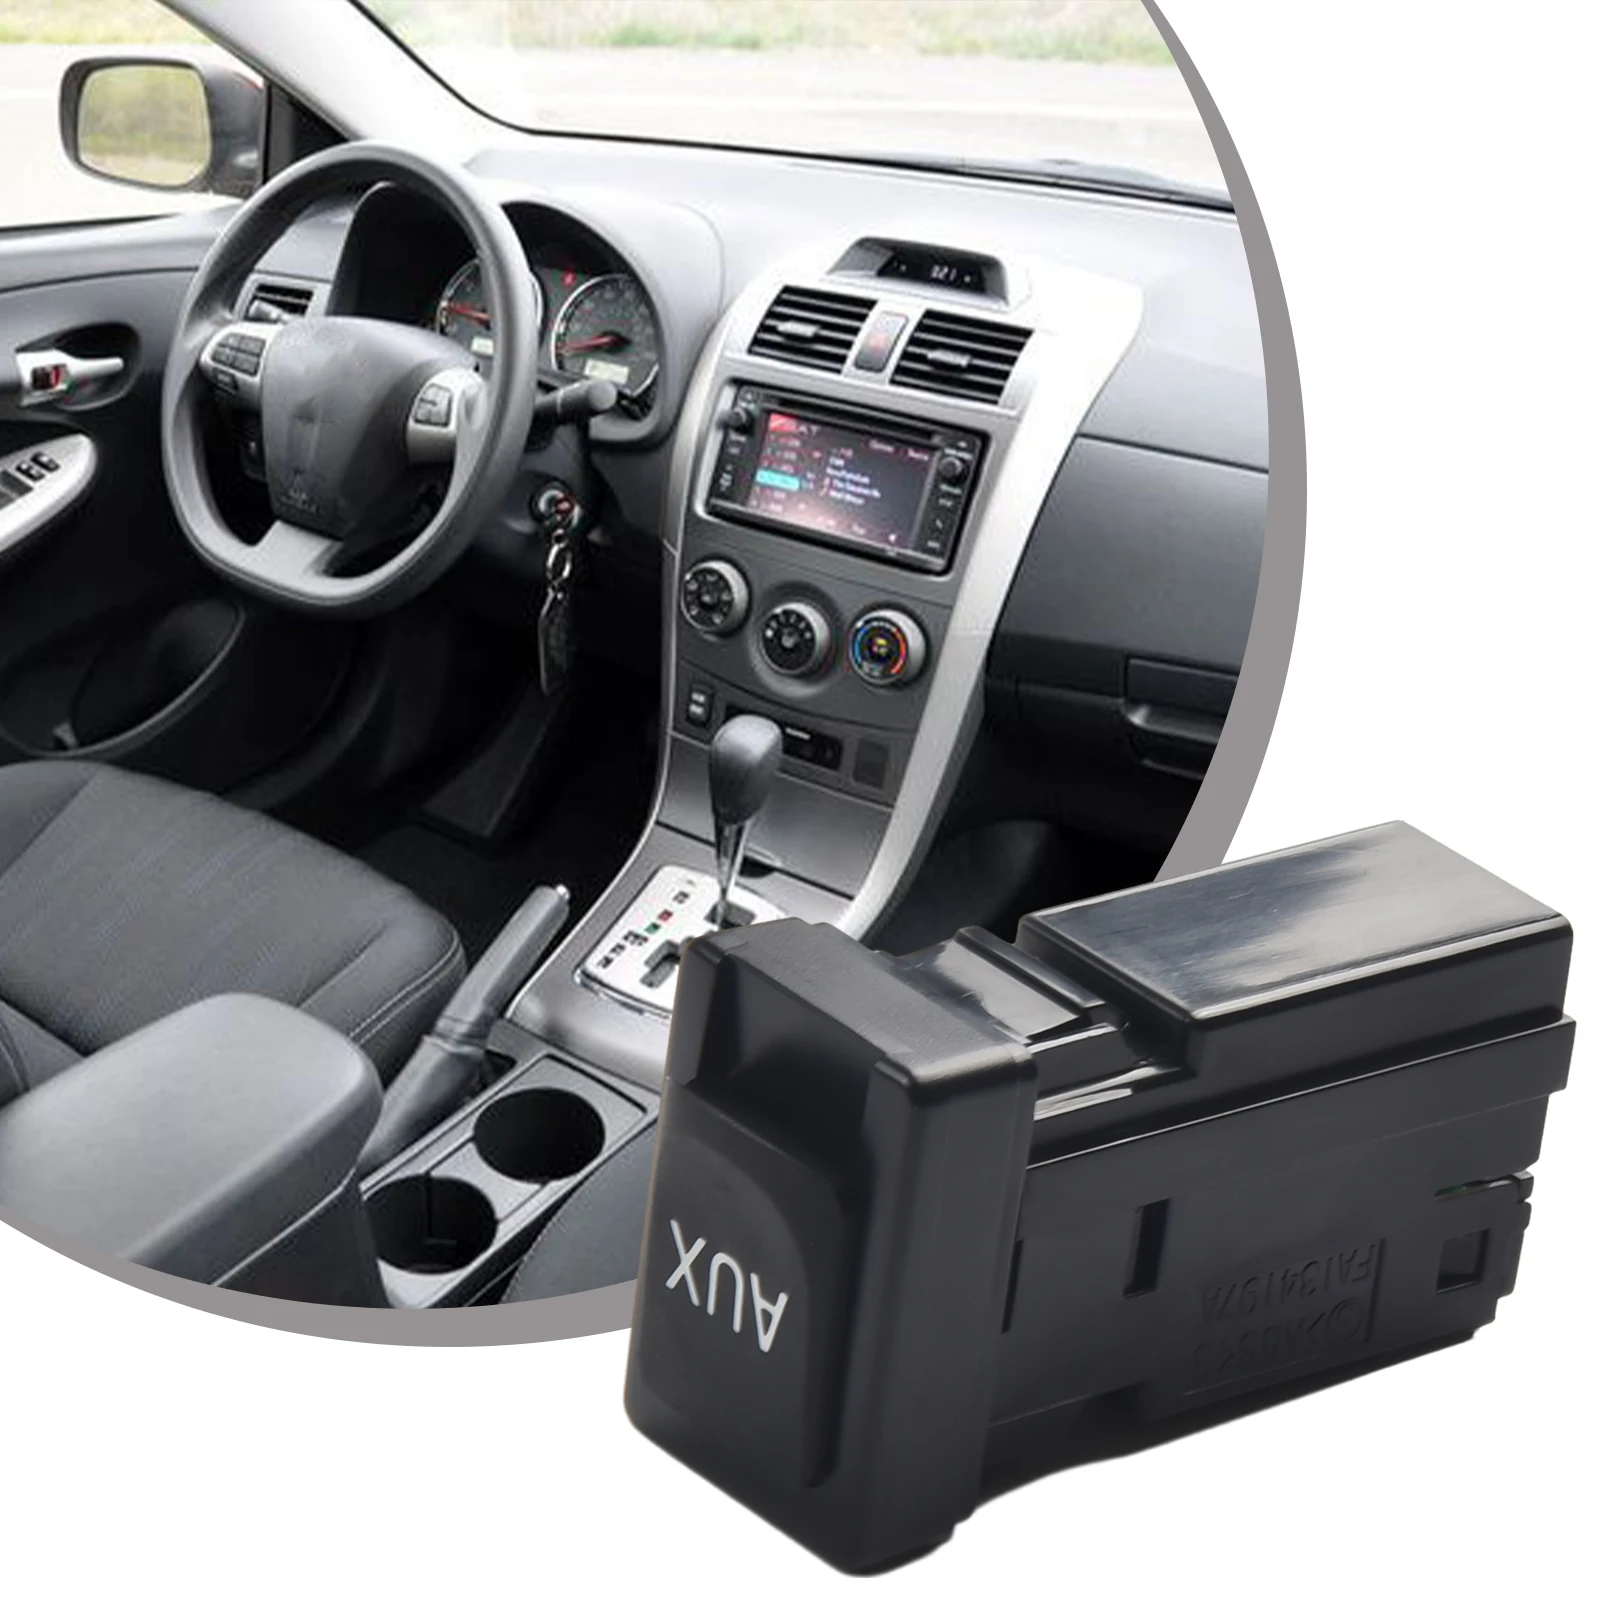 Kiváló minőségű AUX foglalat interfész 25 Súly 8619002010 ABS anyag korróziógátló autó központi vezérlés tartós